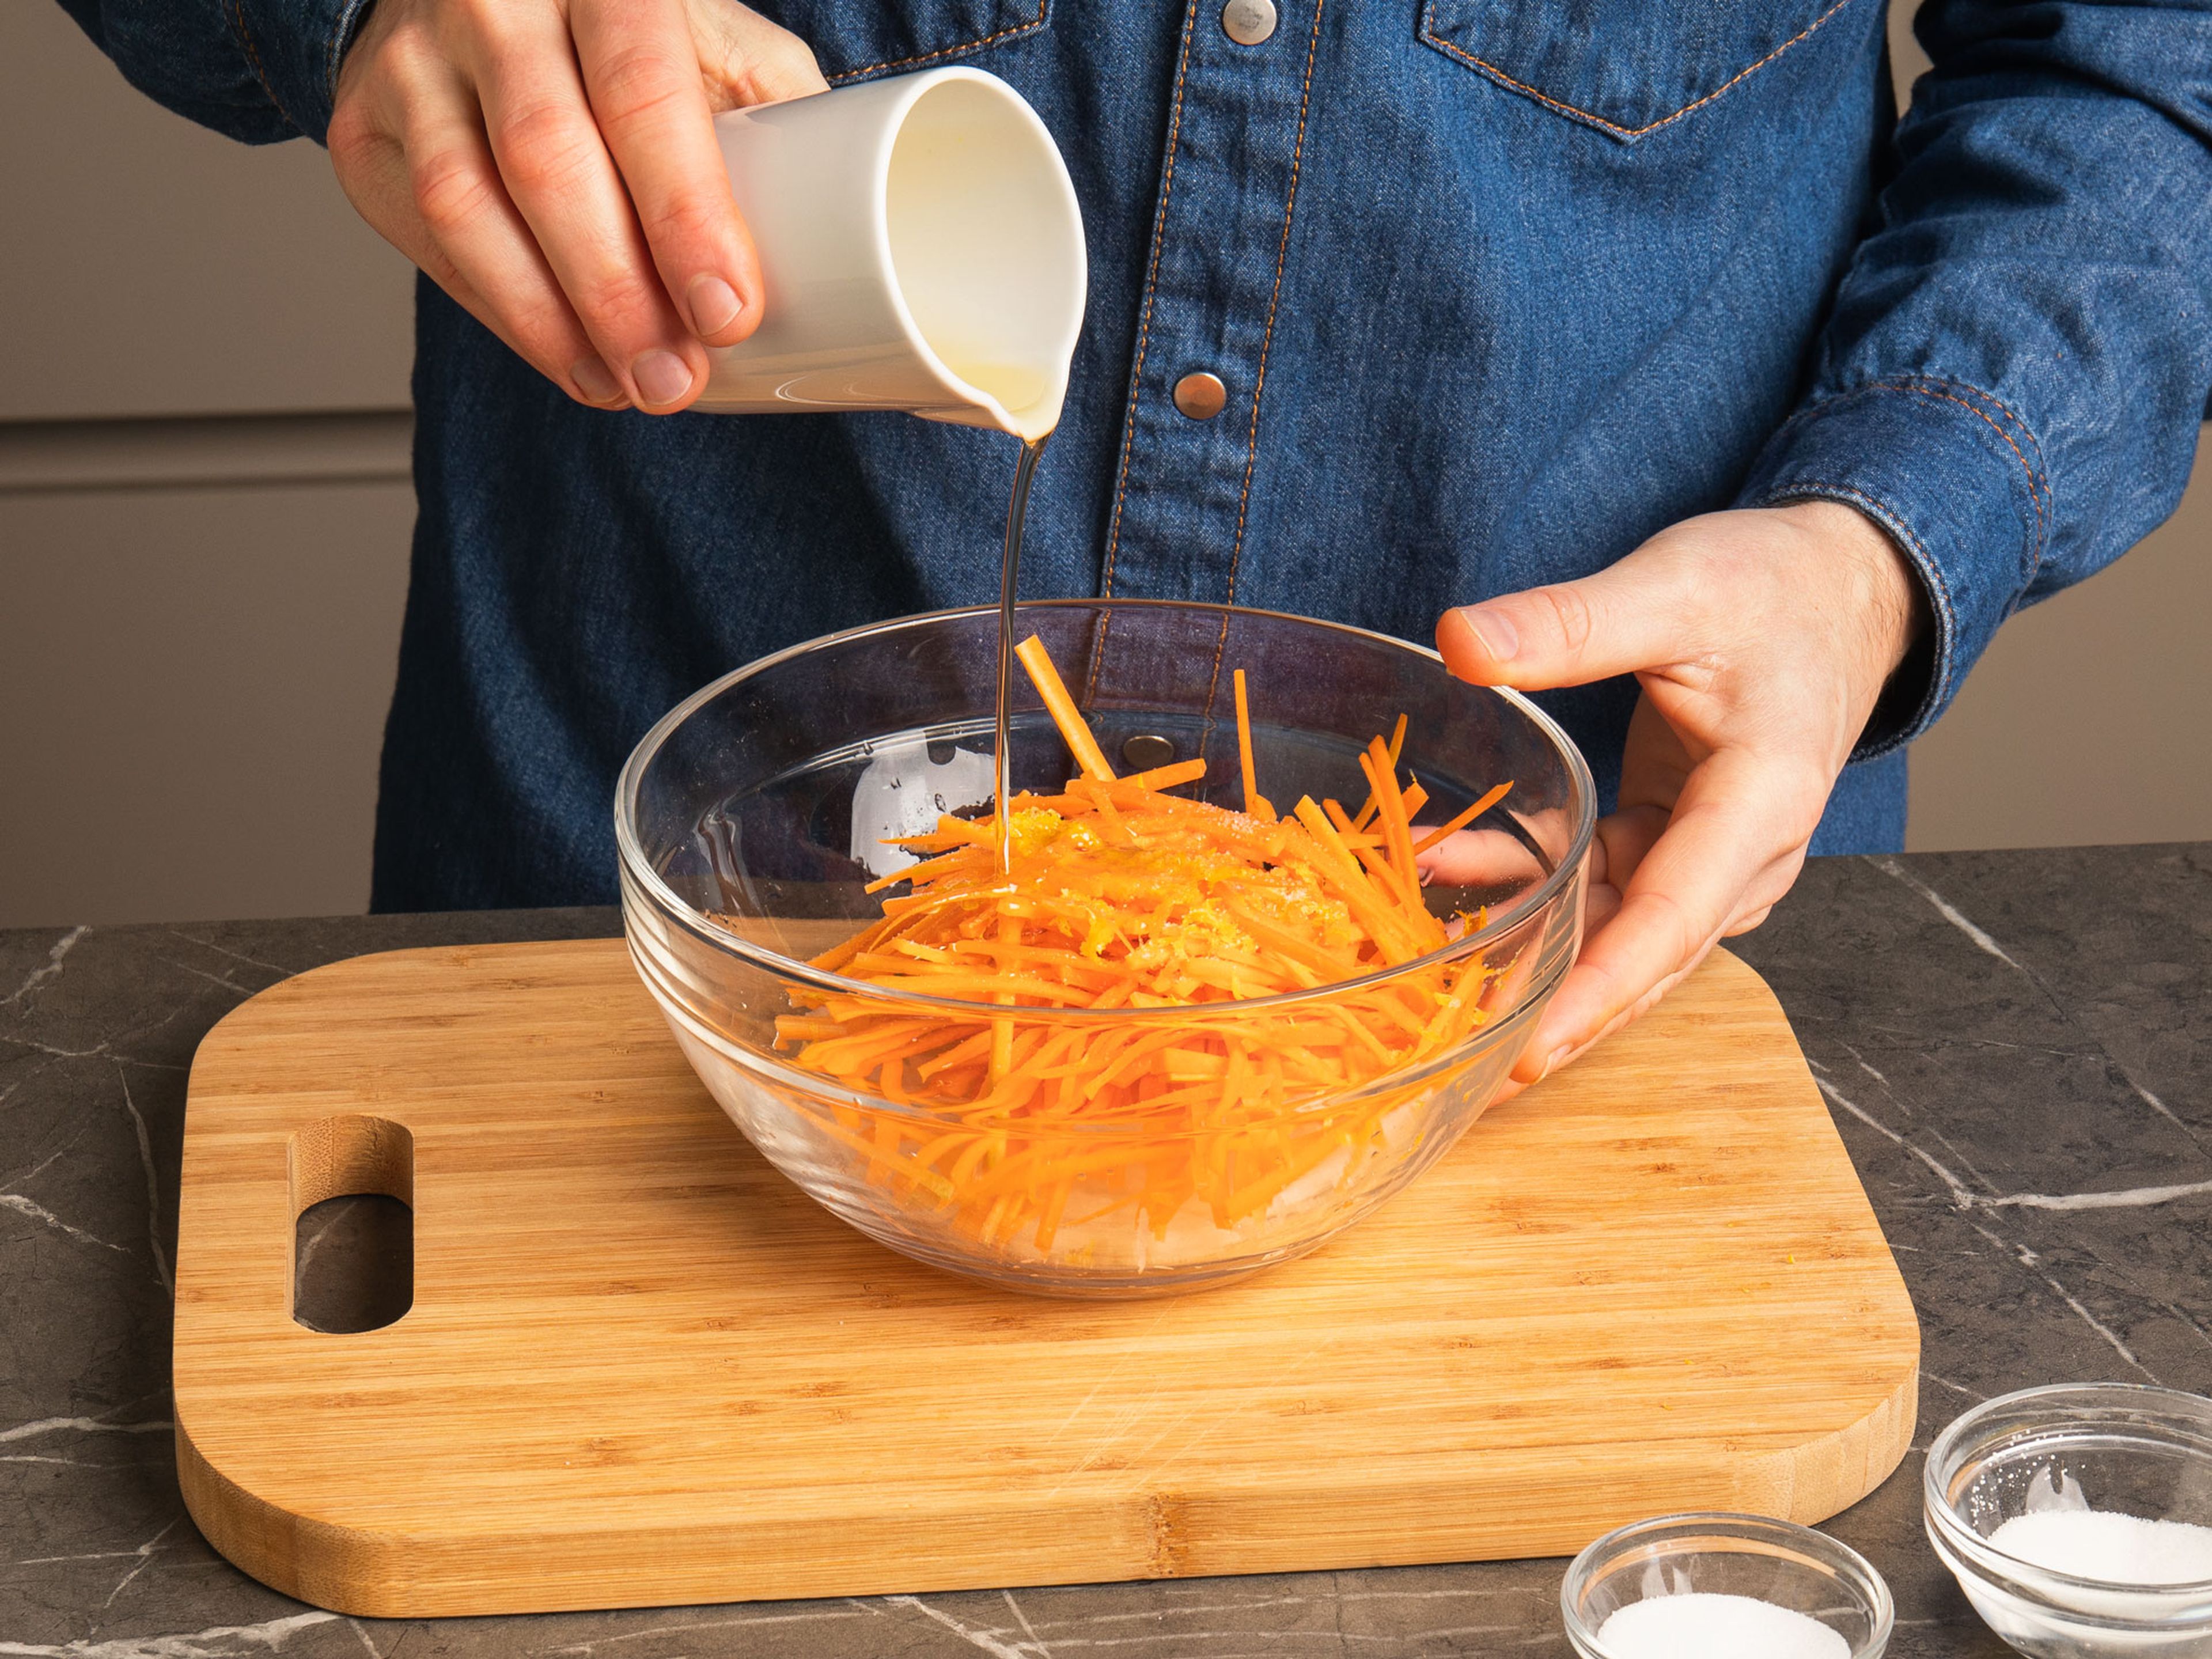 Karotten und Rettich schälen und in 8cm lange feine Streifen schneiden oder hobeln. Anschließend mit Salz, Zucker, Zitronensaft und Abrieb, sowie Sesamöl vermengen und ziehen lassen.